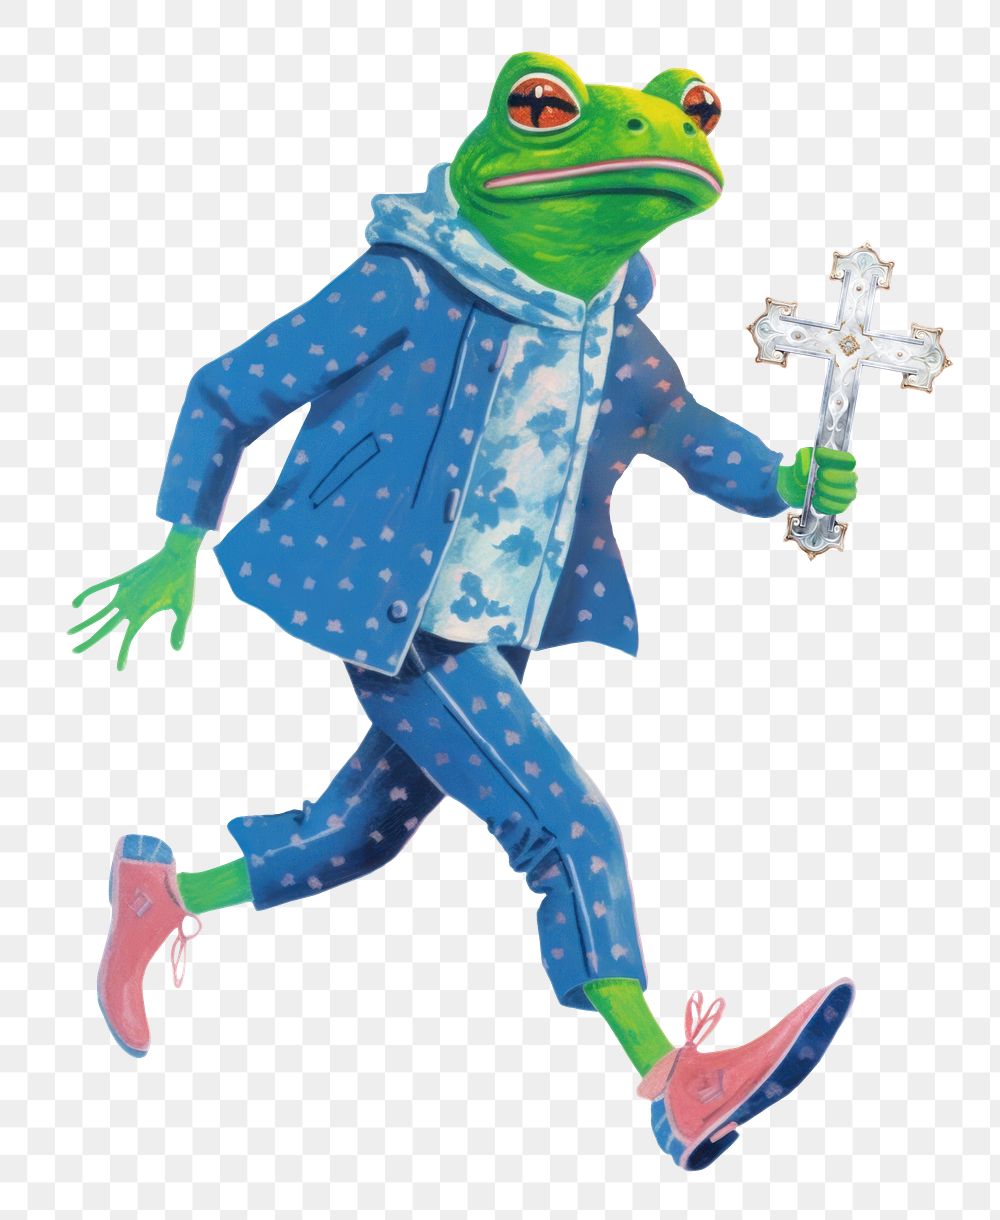 Frog character png holding cross digital art illustration, transparent background